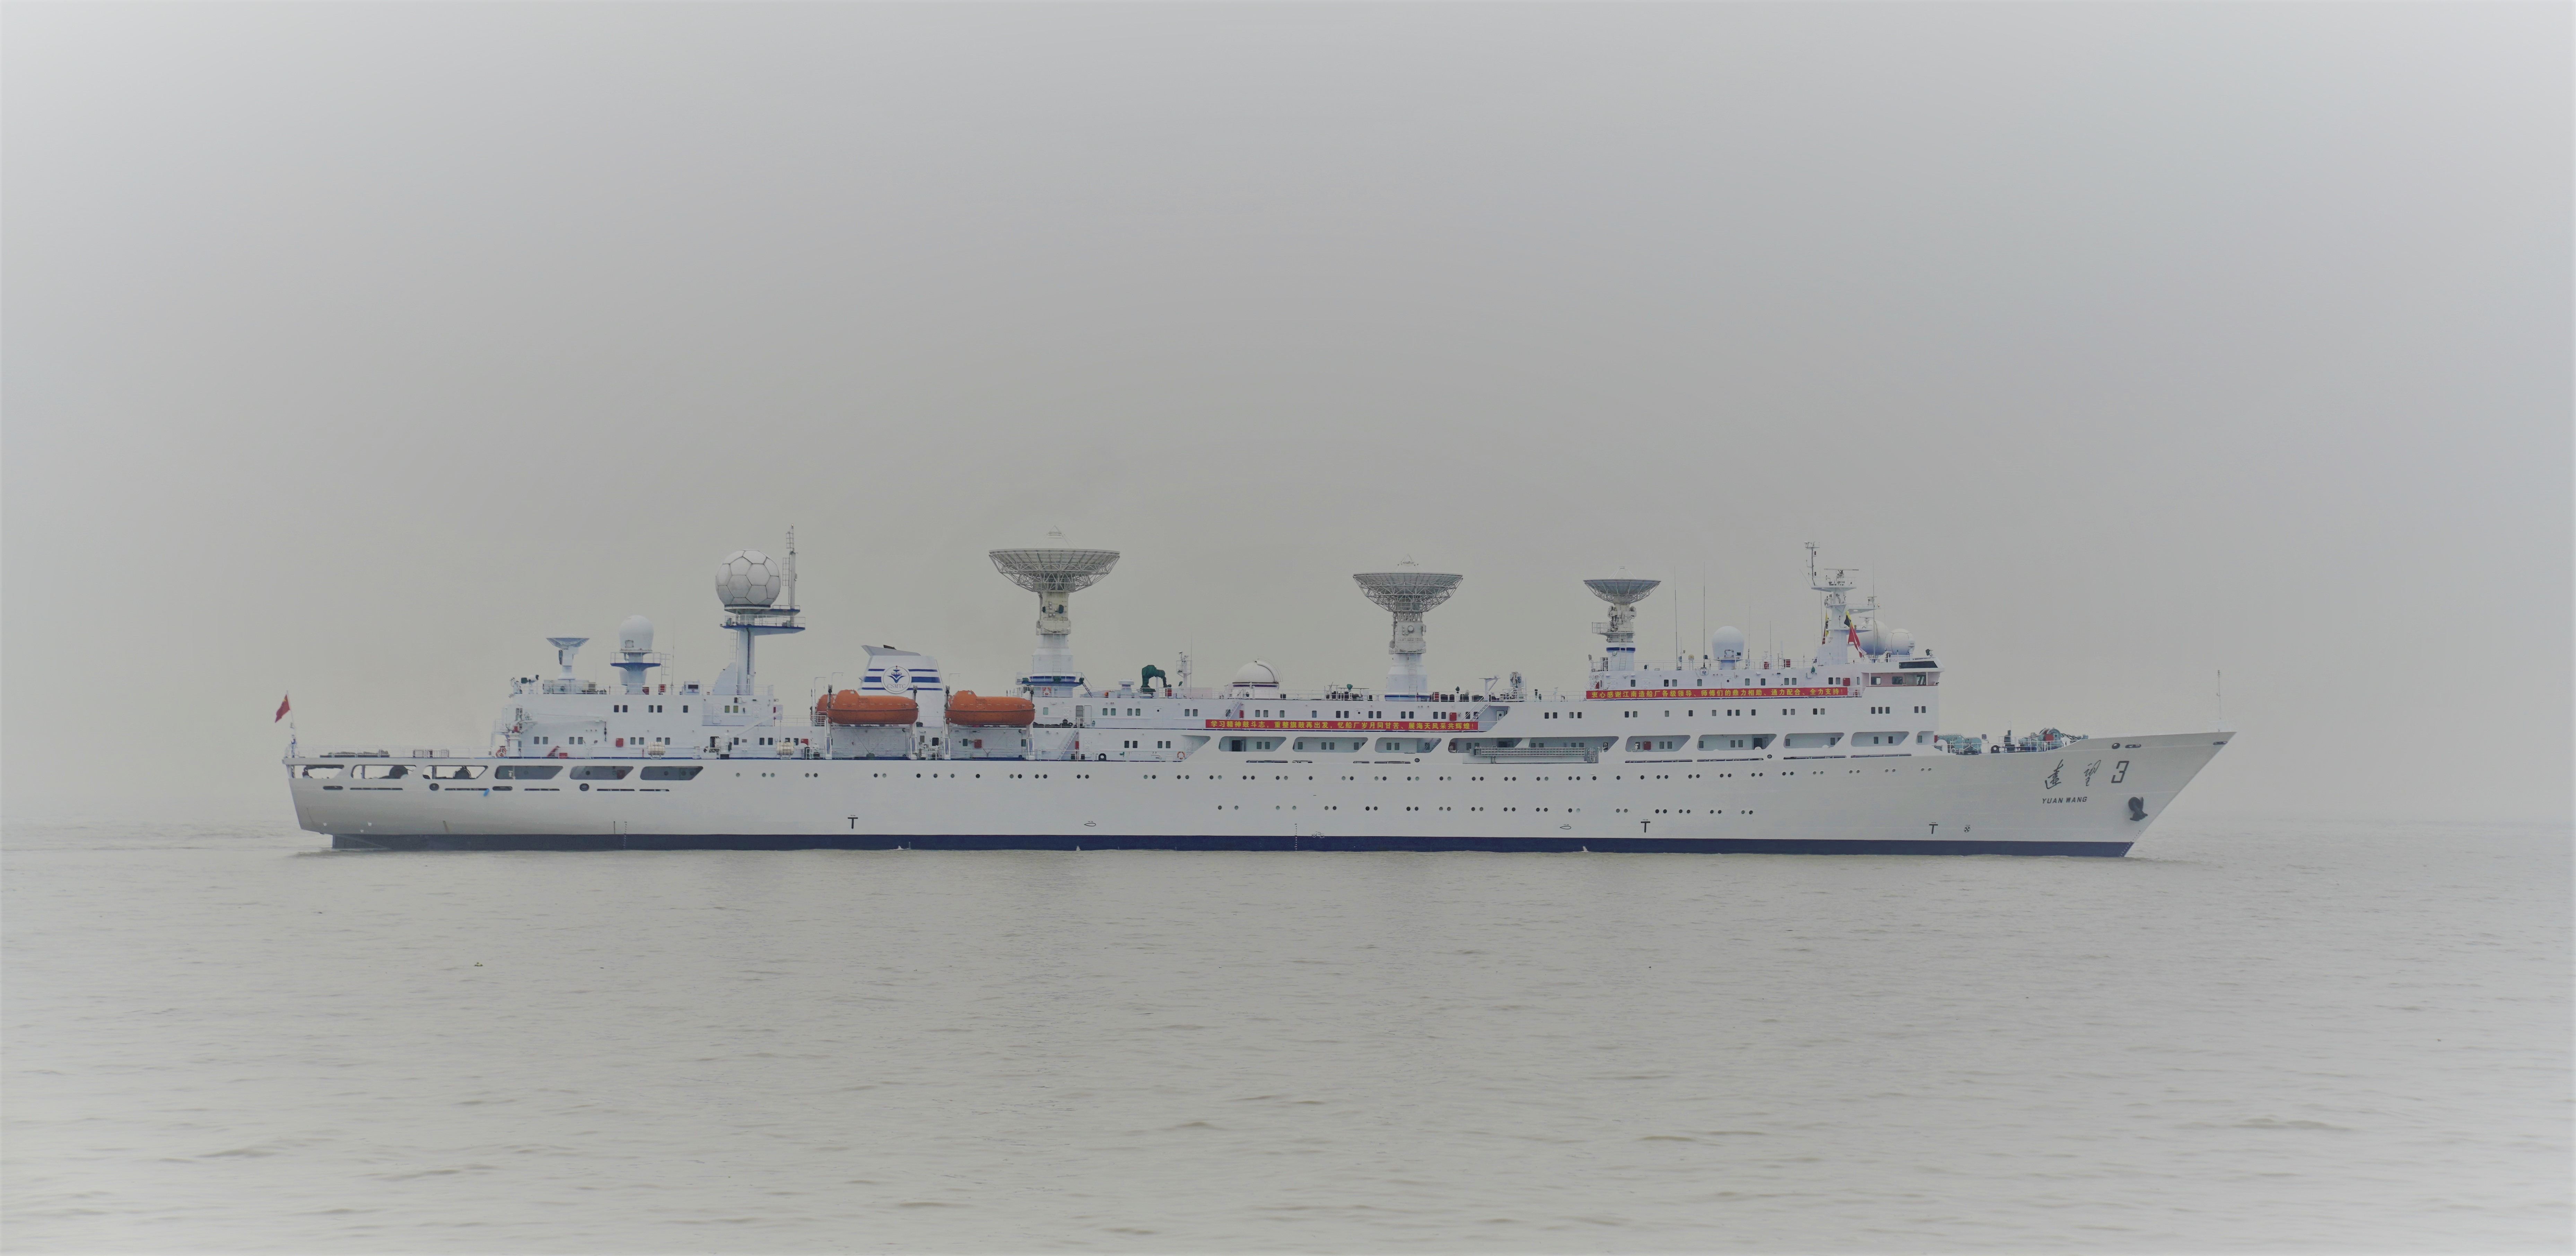 远望3号航天远洋测量船完成中修驶出上海江南造船码头